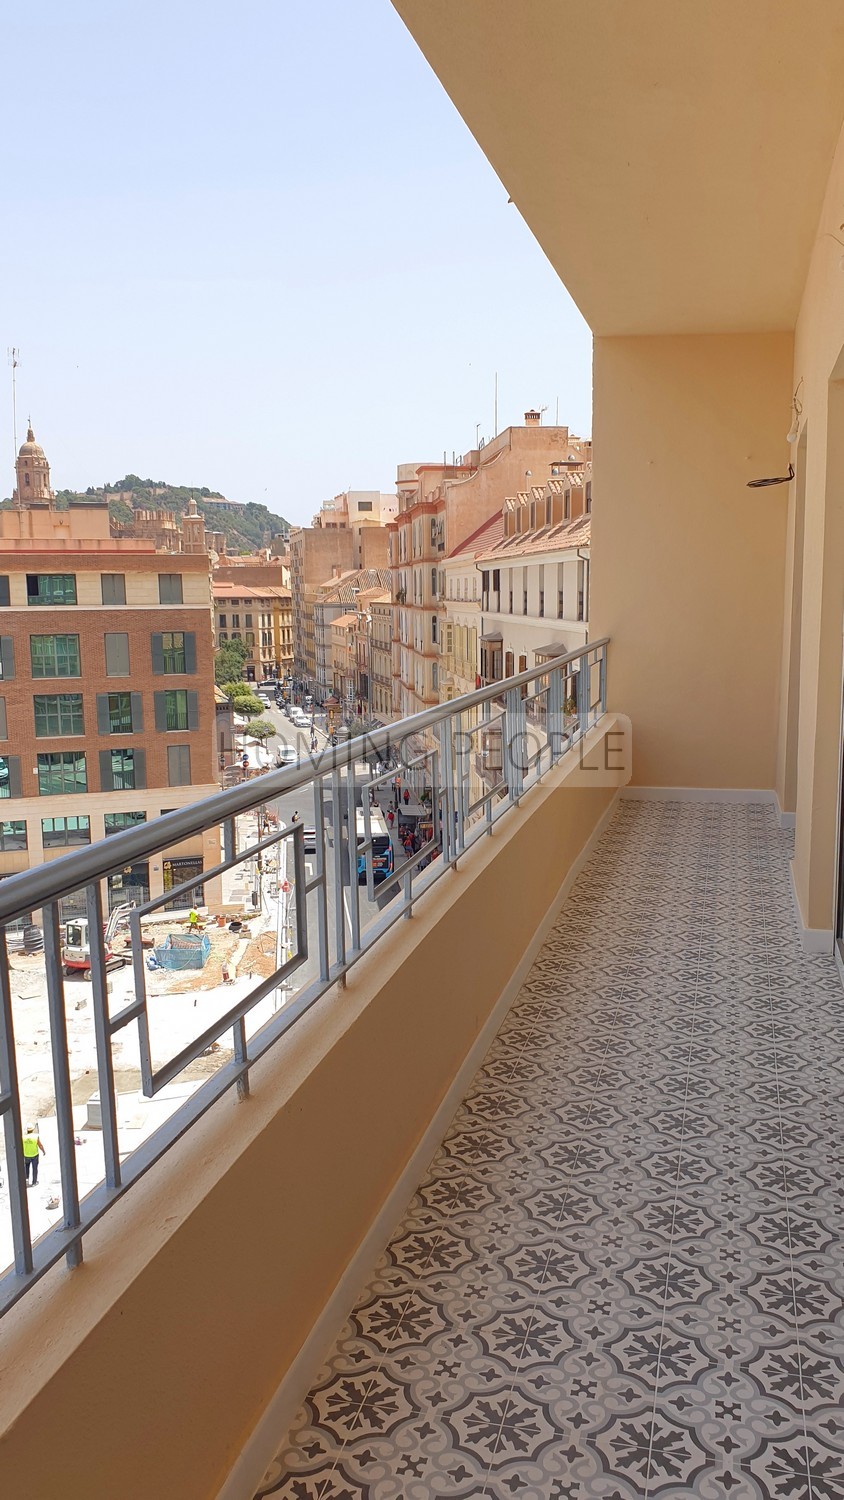 DÉJÀ LOUÉ_Appartement avec terrasse: Non-meublé, totalement rénové et situé face au marché central!